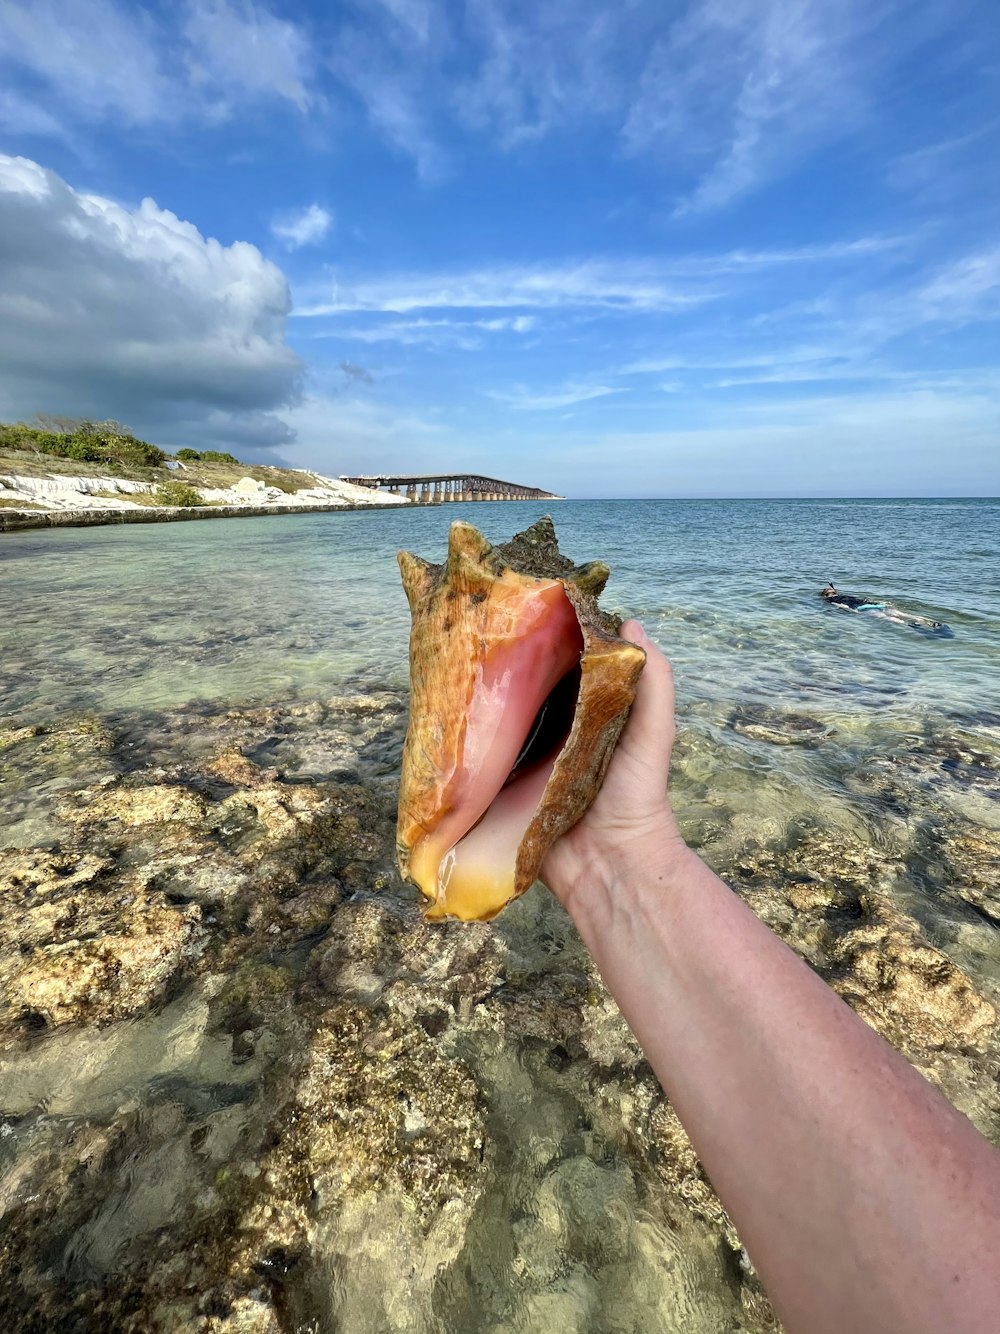 a hand holding a seashell on a rocky beach